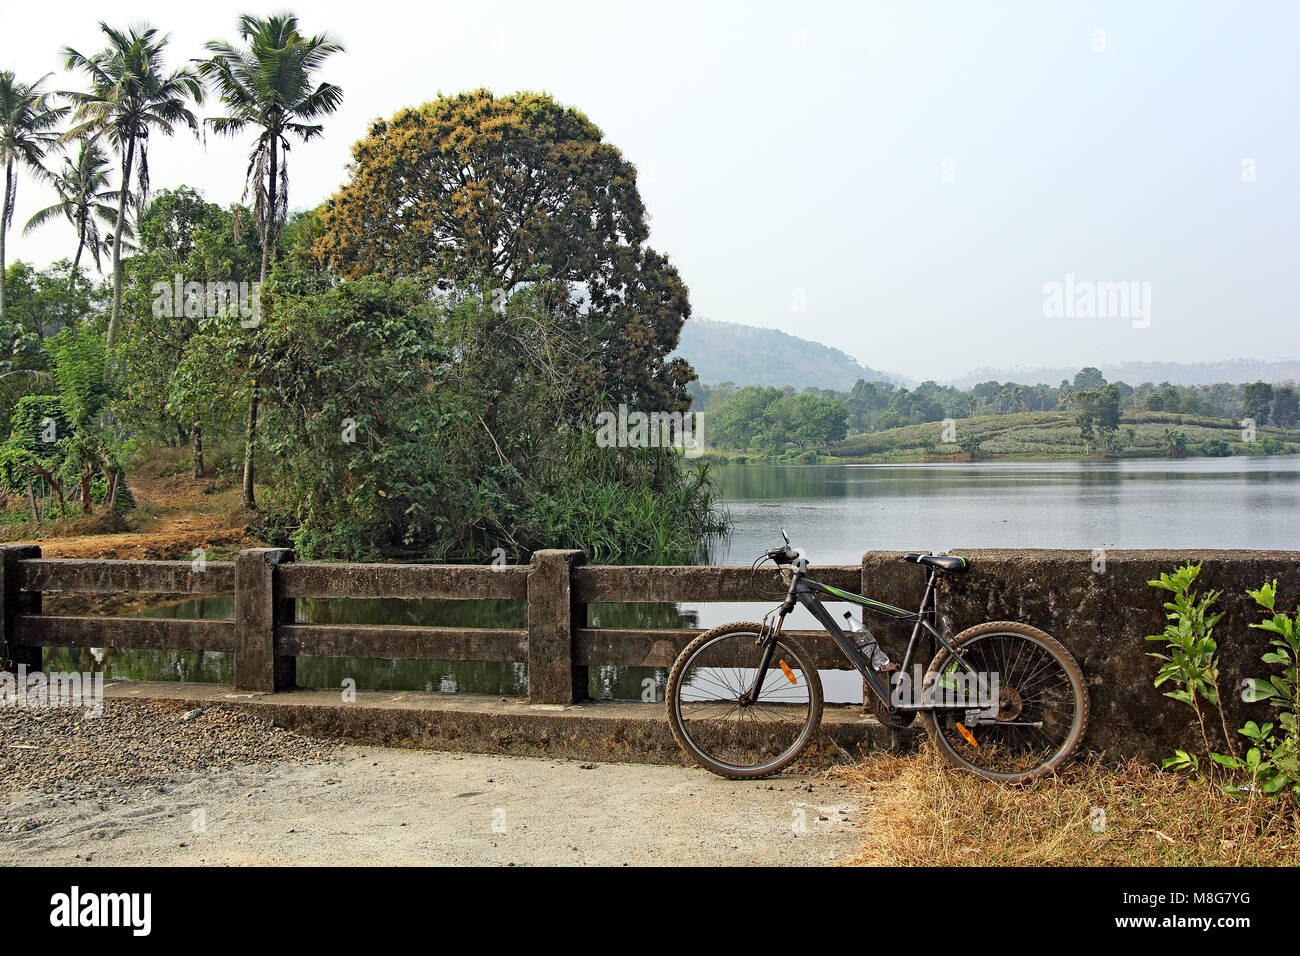 Fahrrad geparkt, während Off Road Bike entlang der malerischen Landschaft mit Seen und Lagunen in Kerala, Indien Stockfoto